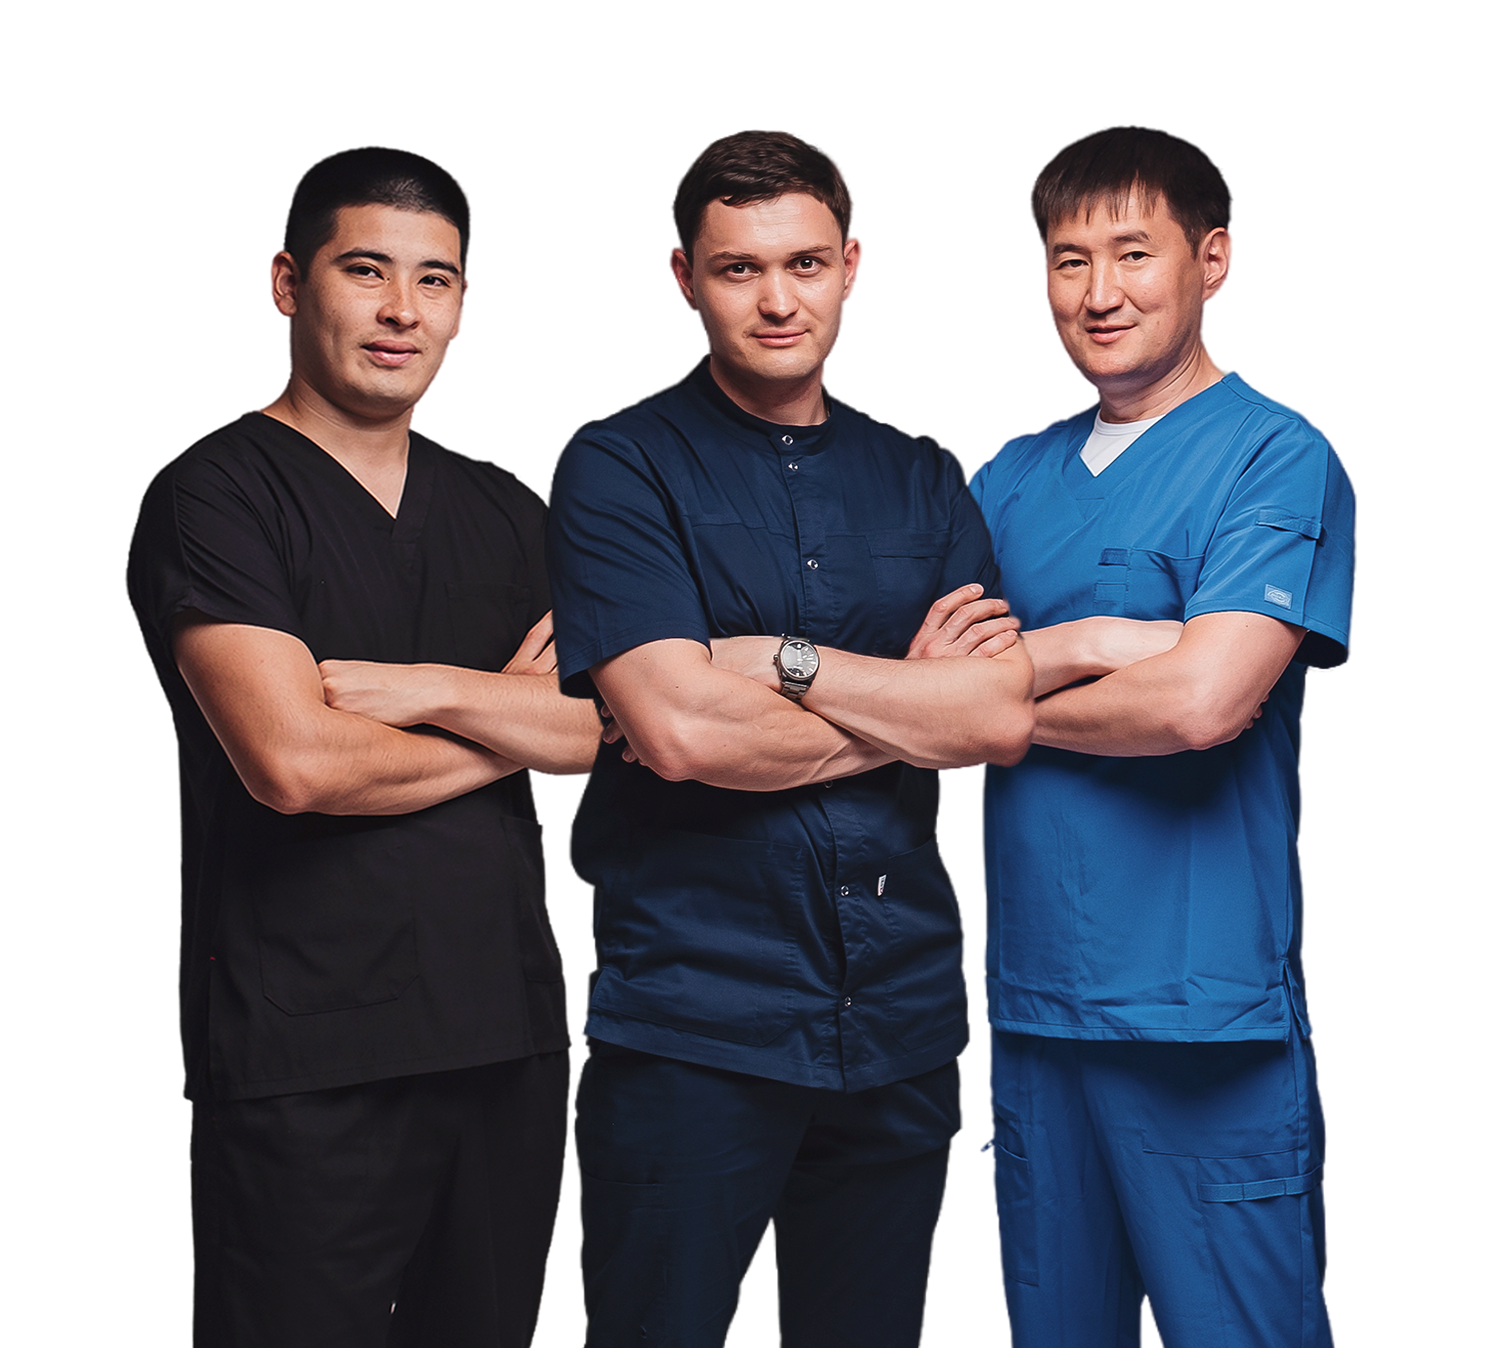 Четыре врача-стоматолога стоят в брутальной позе с перекрещенными руками. Они профессионалы своего дела.